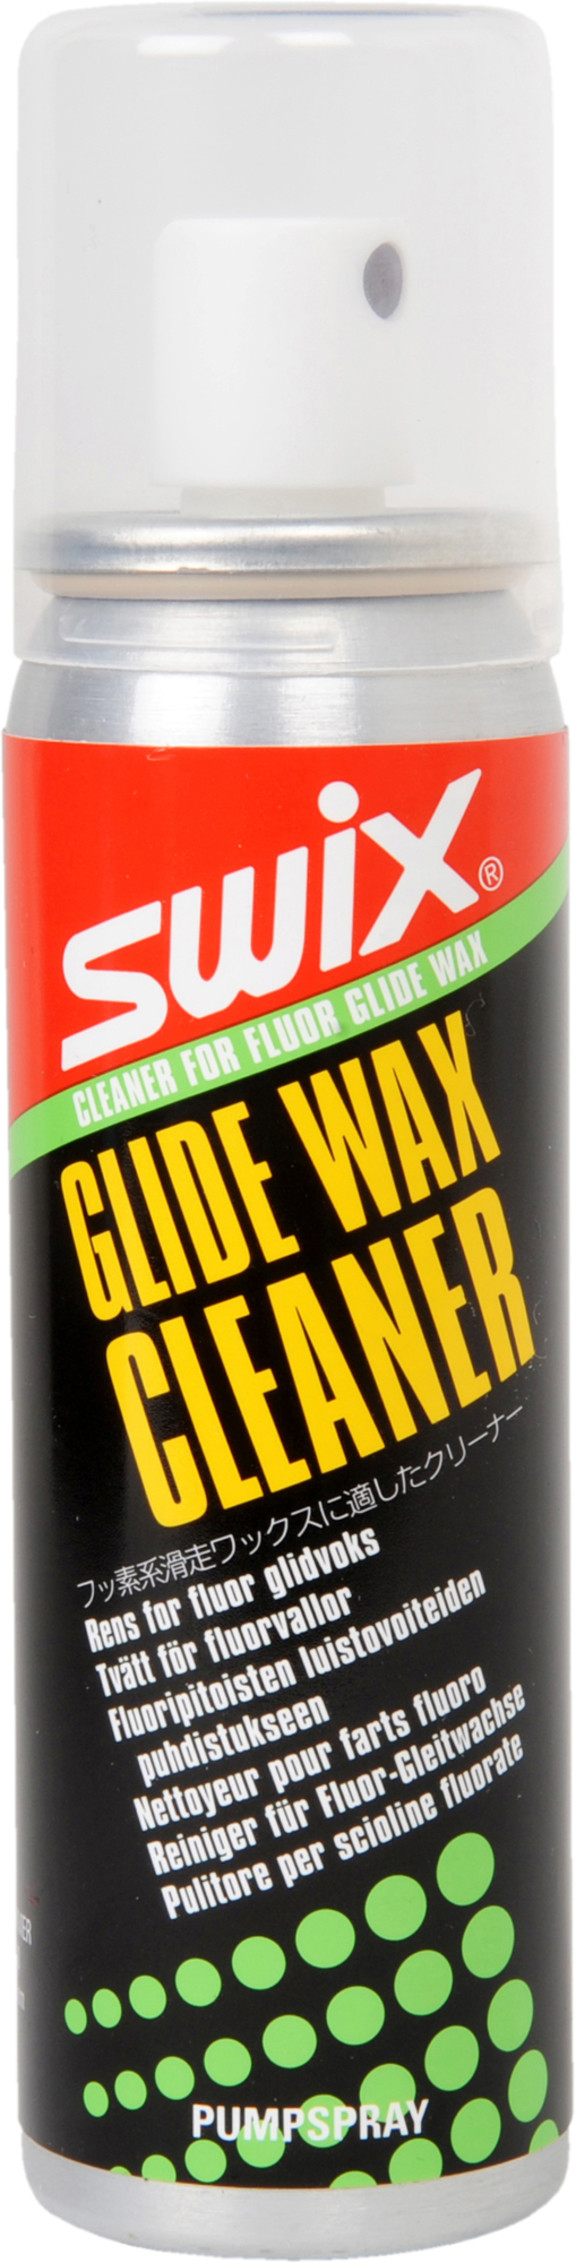 Смывка для фторированных мазей скольжения Swix I84 Cleaner 70ml